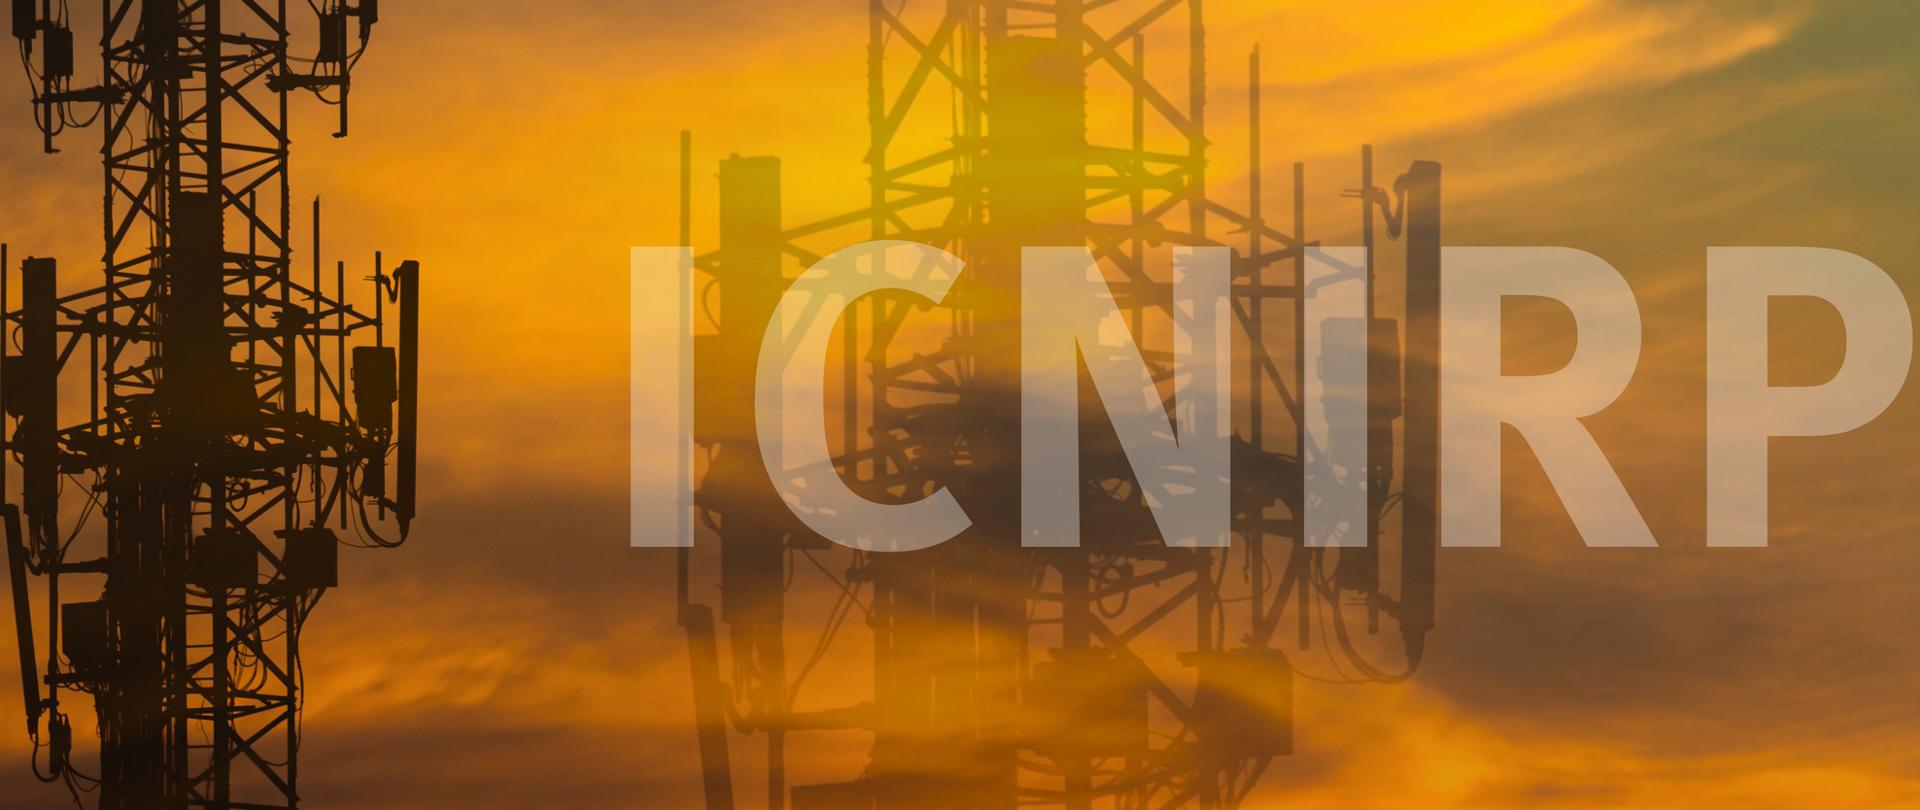 Zdjęcie przedstawia maszt sieci komórkowej oraz napis "ICNIRP".